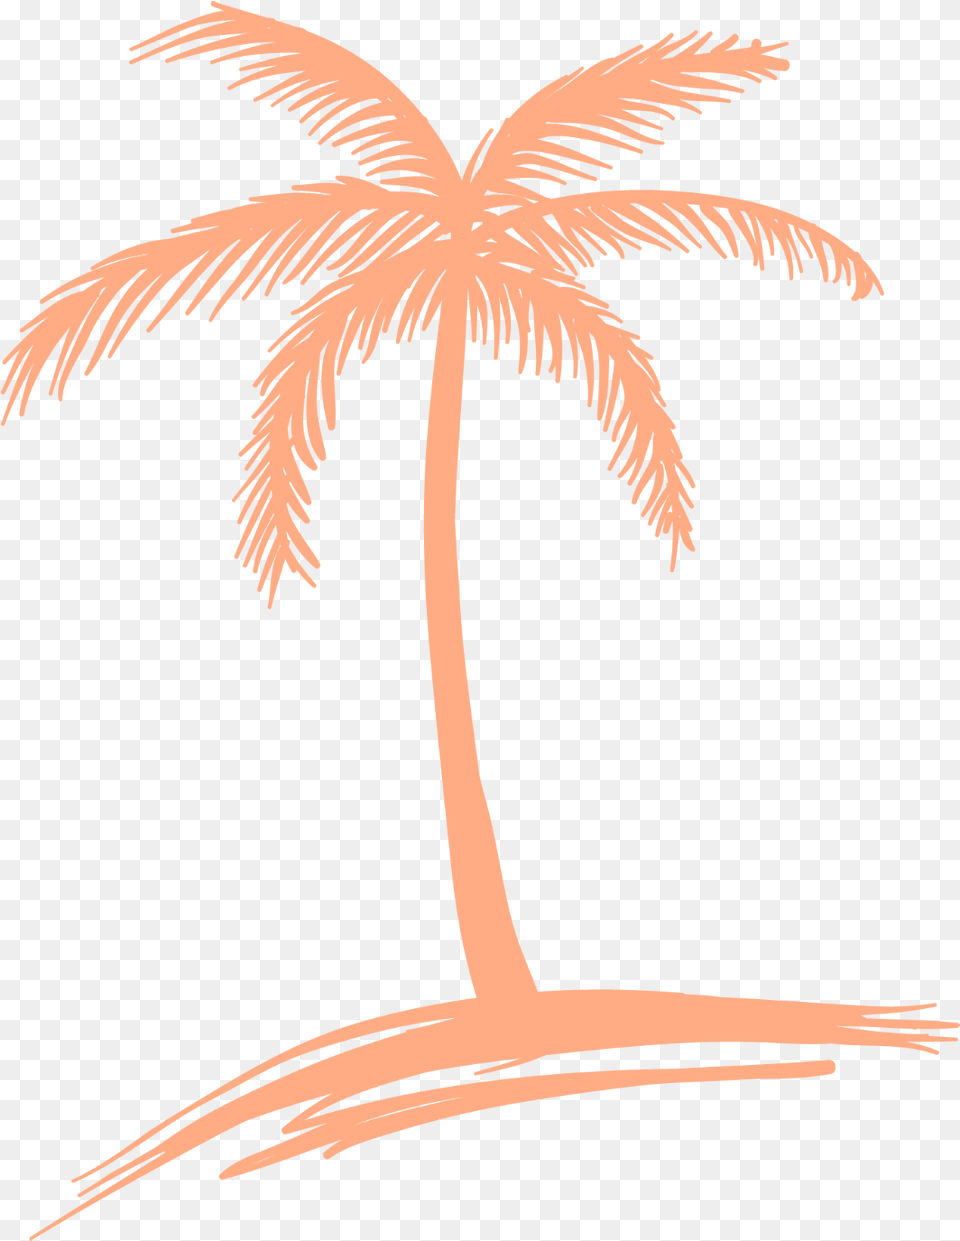 Peach Palm Tree Logo Simple Palm Tree Drawing, Palm Tree, Plant, Animal, Bird Png Image